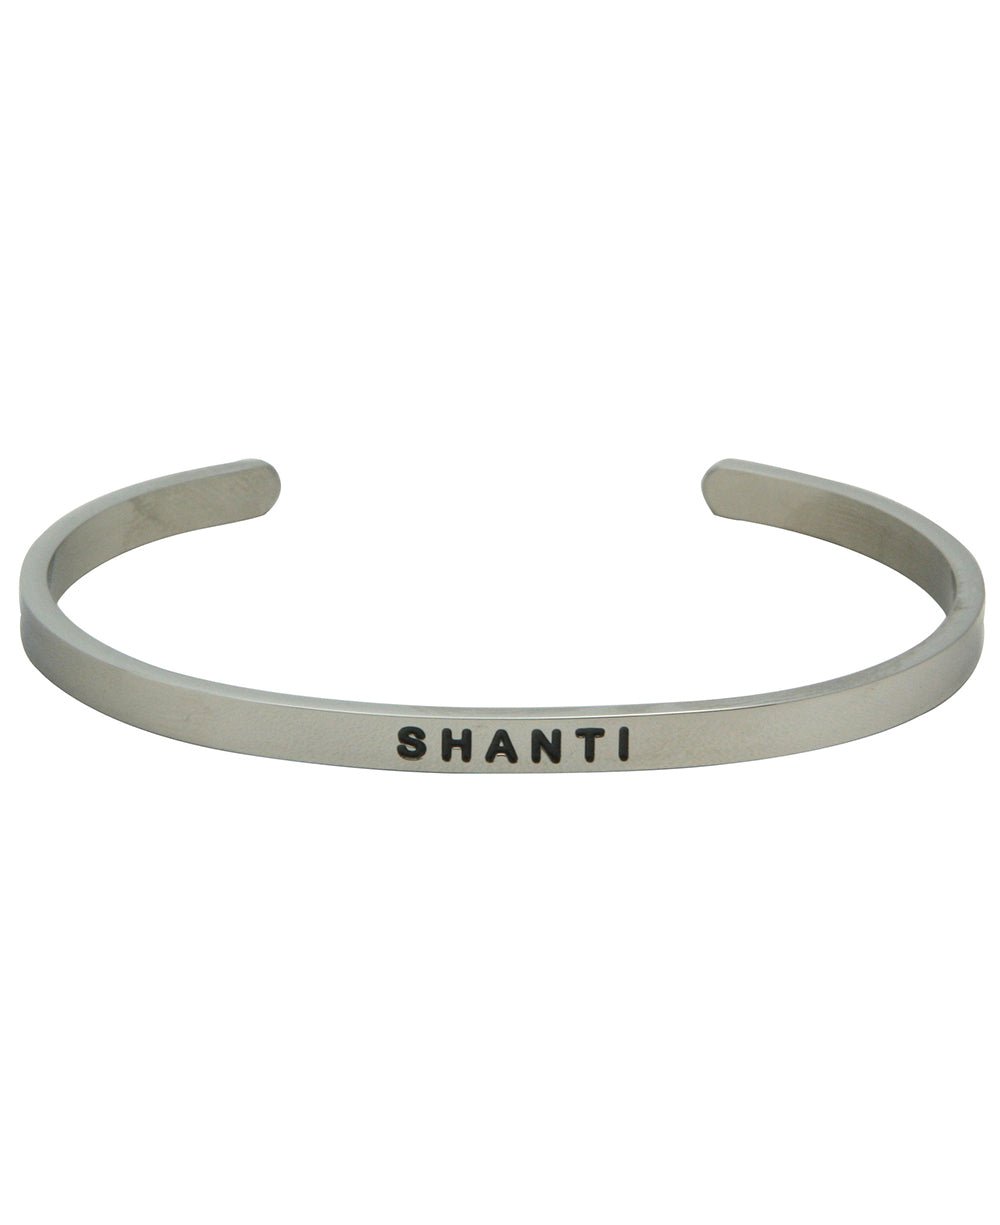 Shanti Cuff Bracelet, Inspirational Jewelry - Bracelets